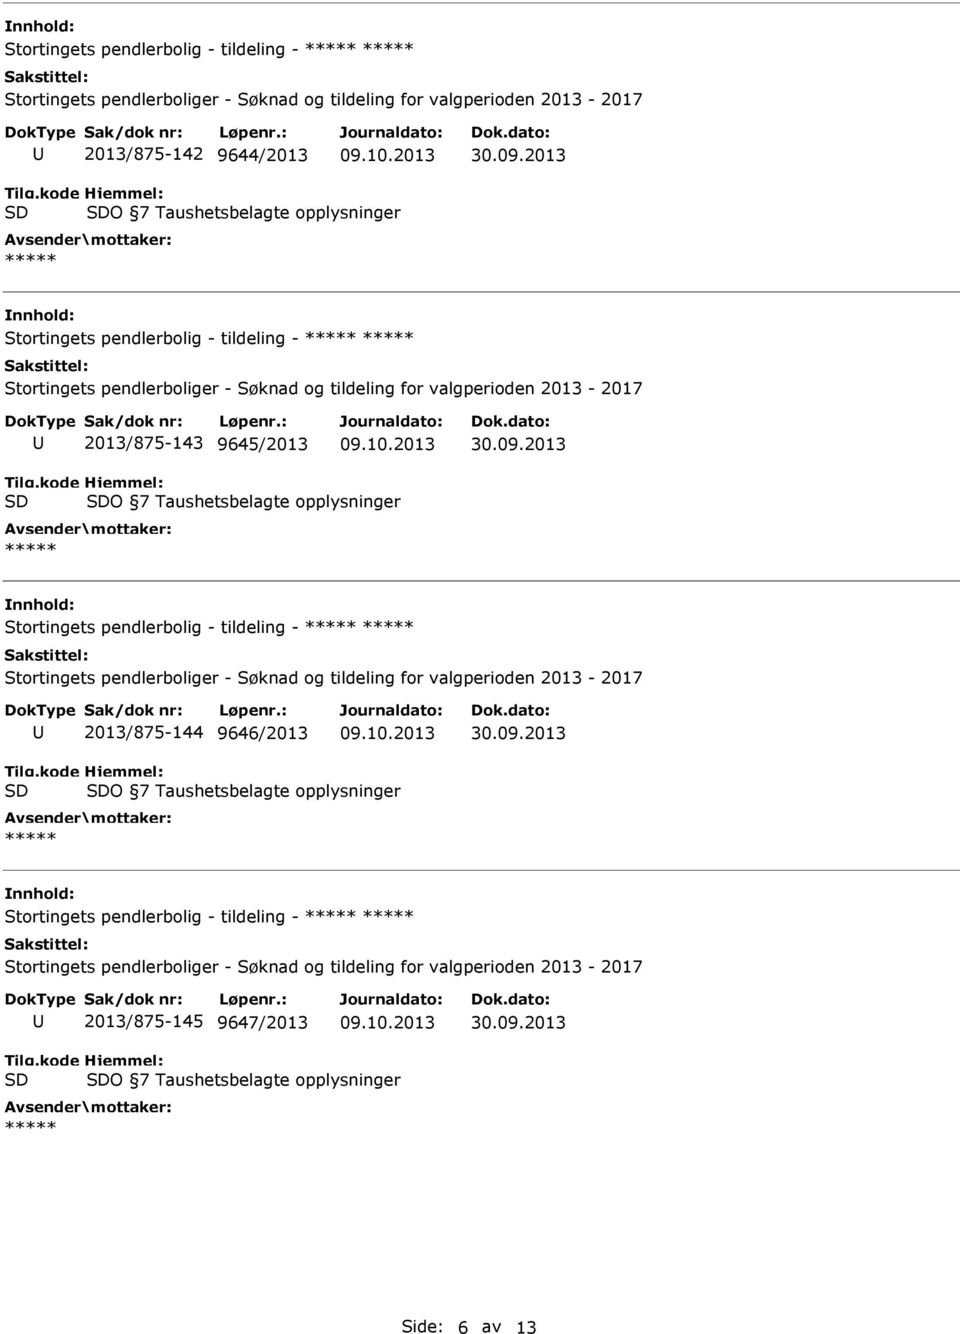 Stortingets pendlerbolig - tildeling - 2013/875-144 9646/2013 O 7 Taushetsbelagte opplysninger